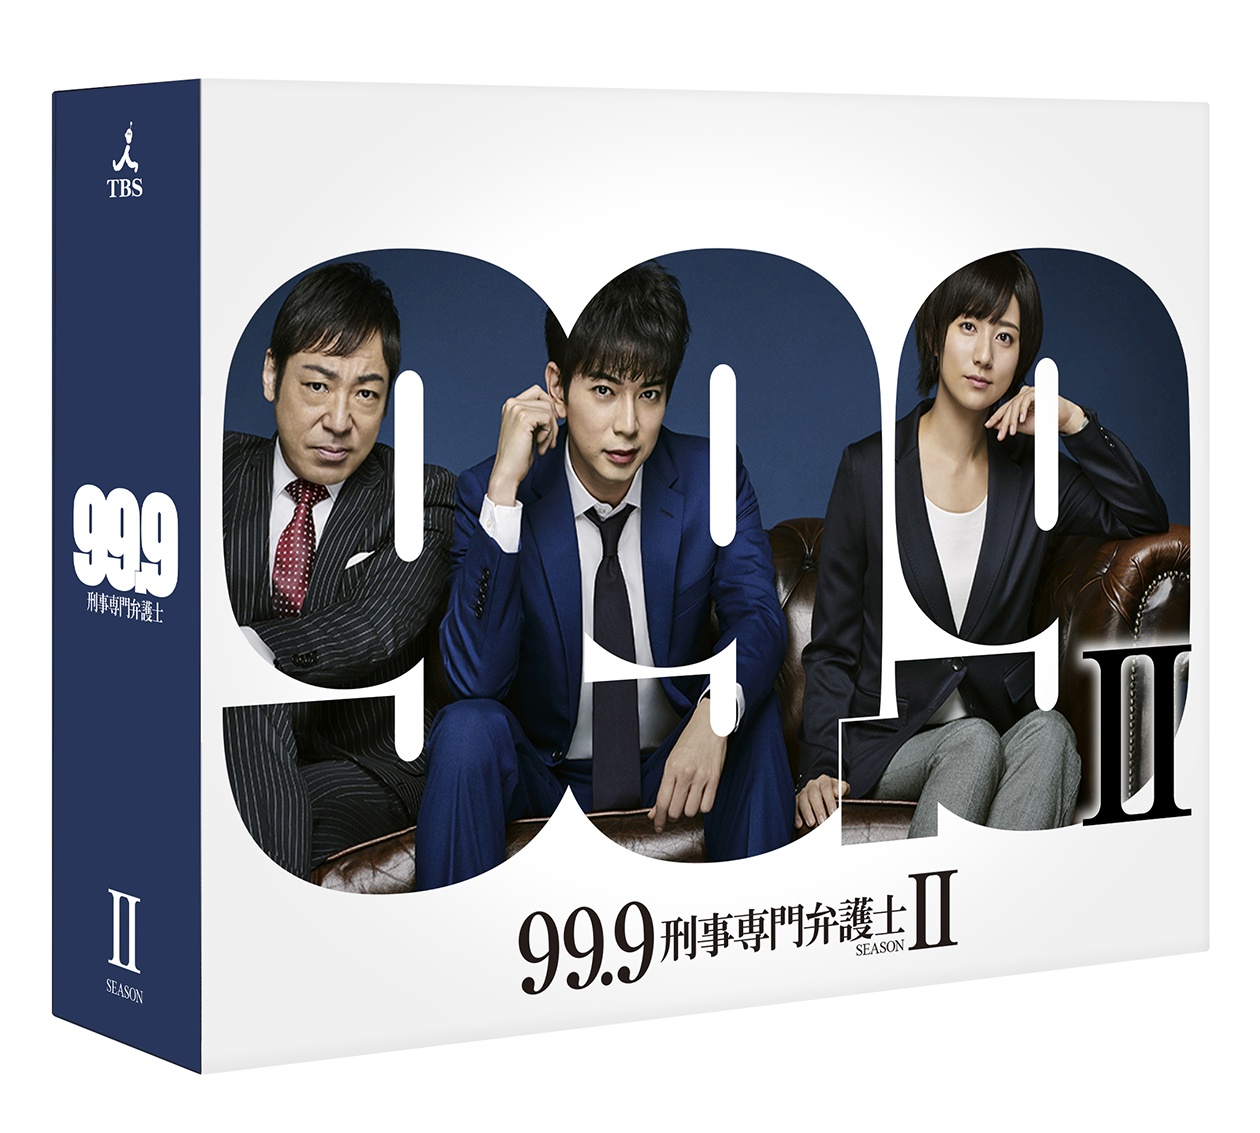 99.9-刑事専門弁護士ー SEASONII DVD-BOX